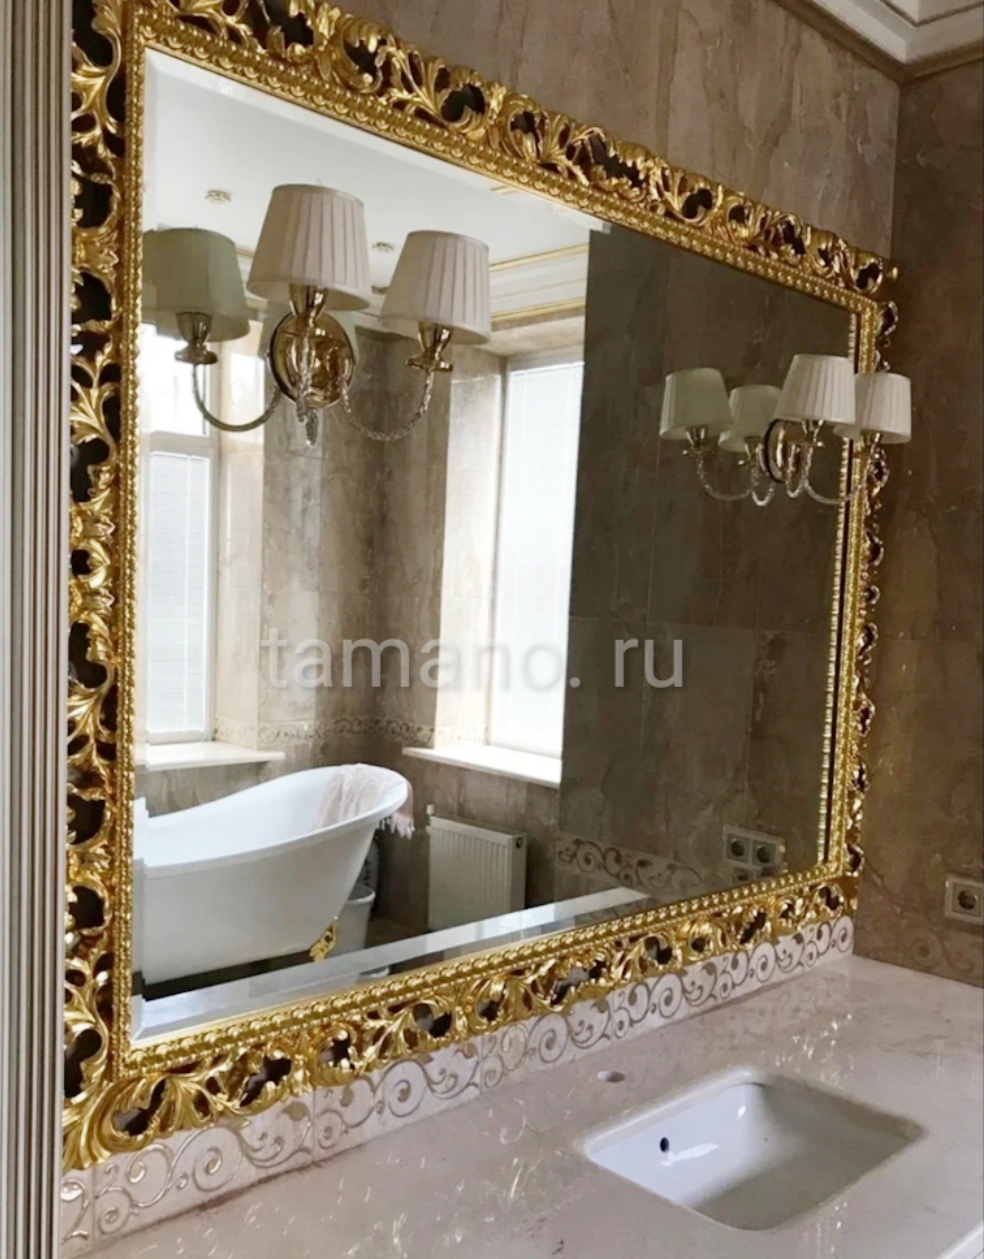 Зеркало в золотой резной раме заказать в ванную комнату.jpg